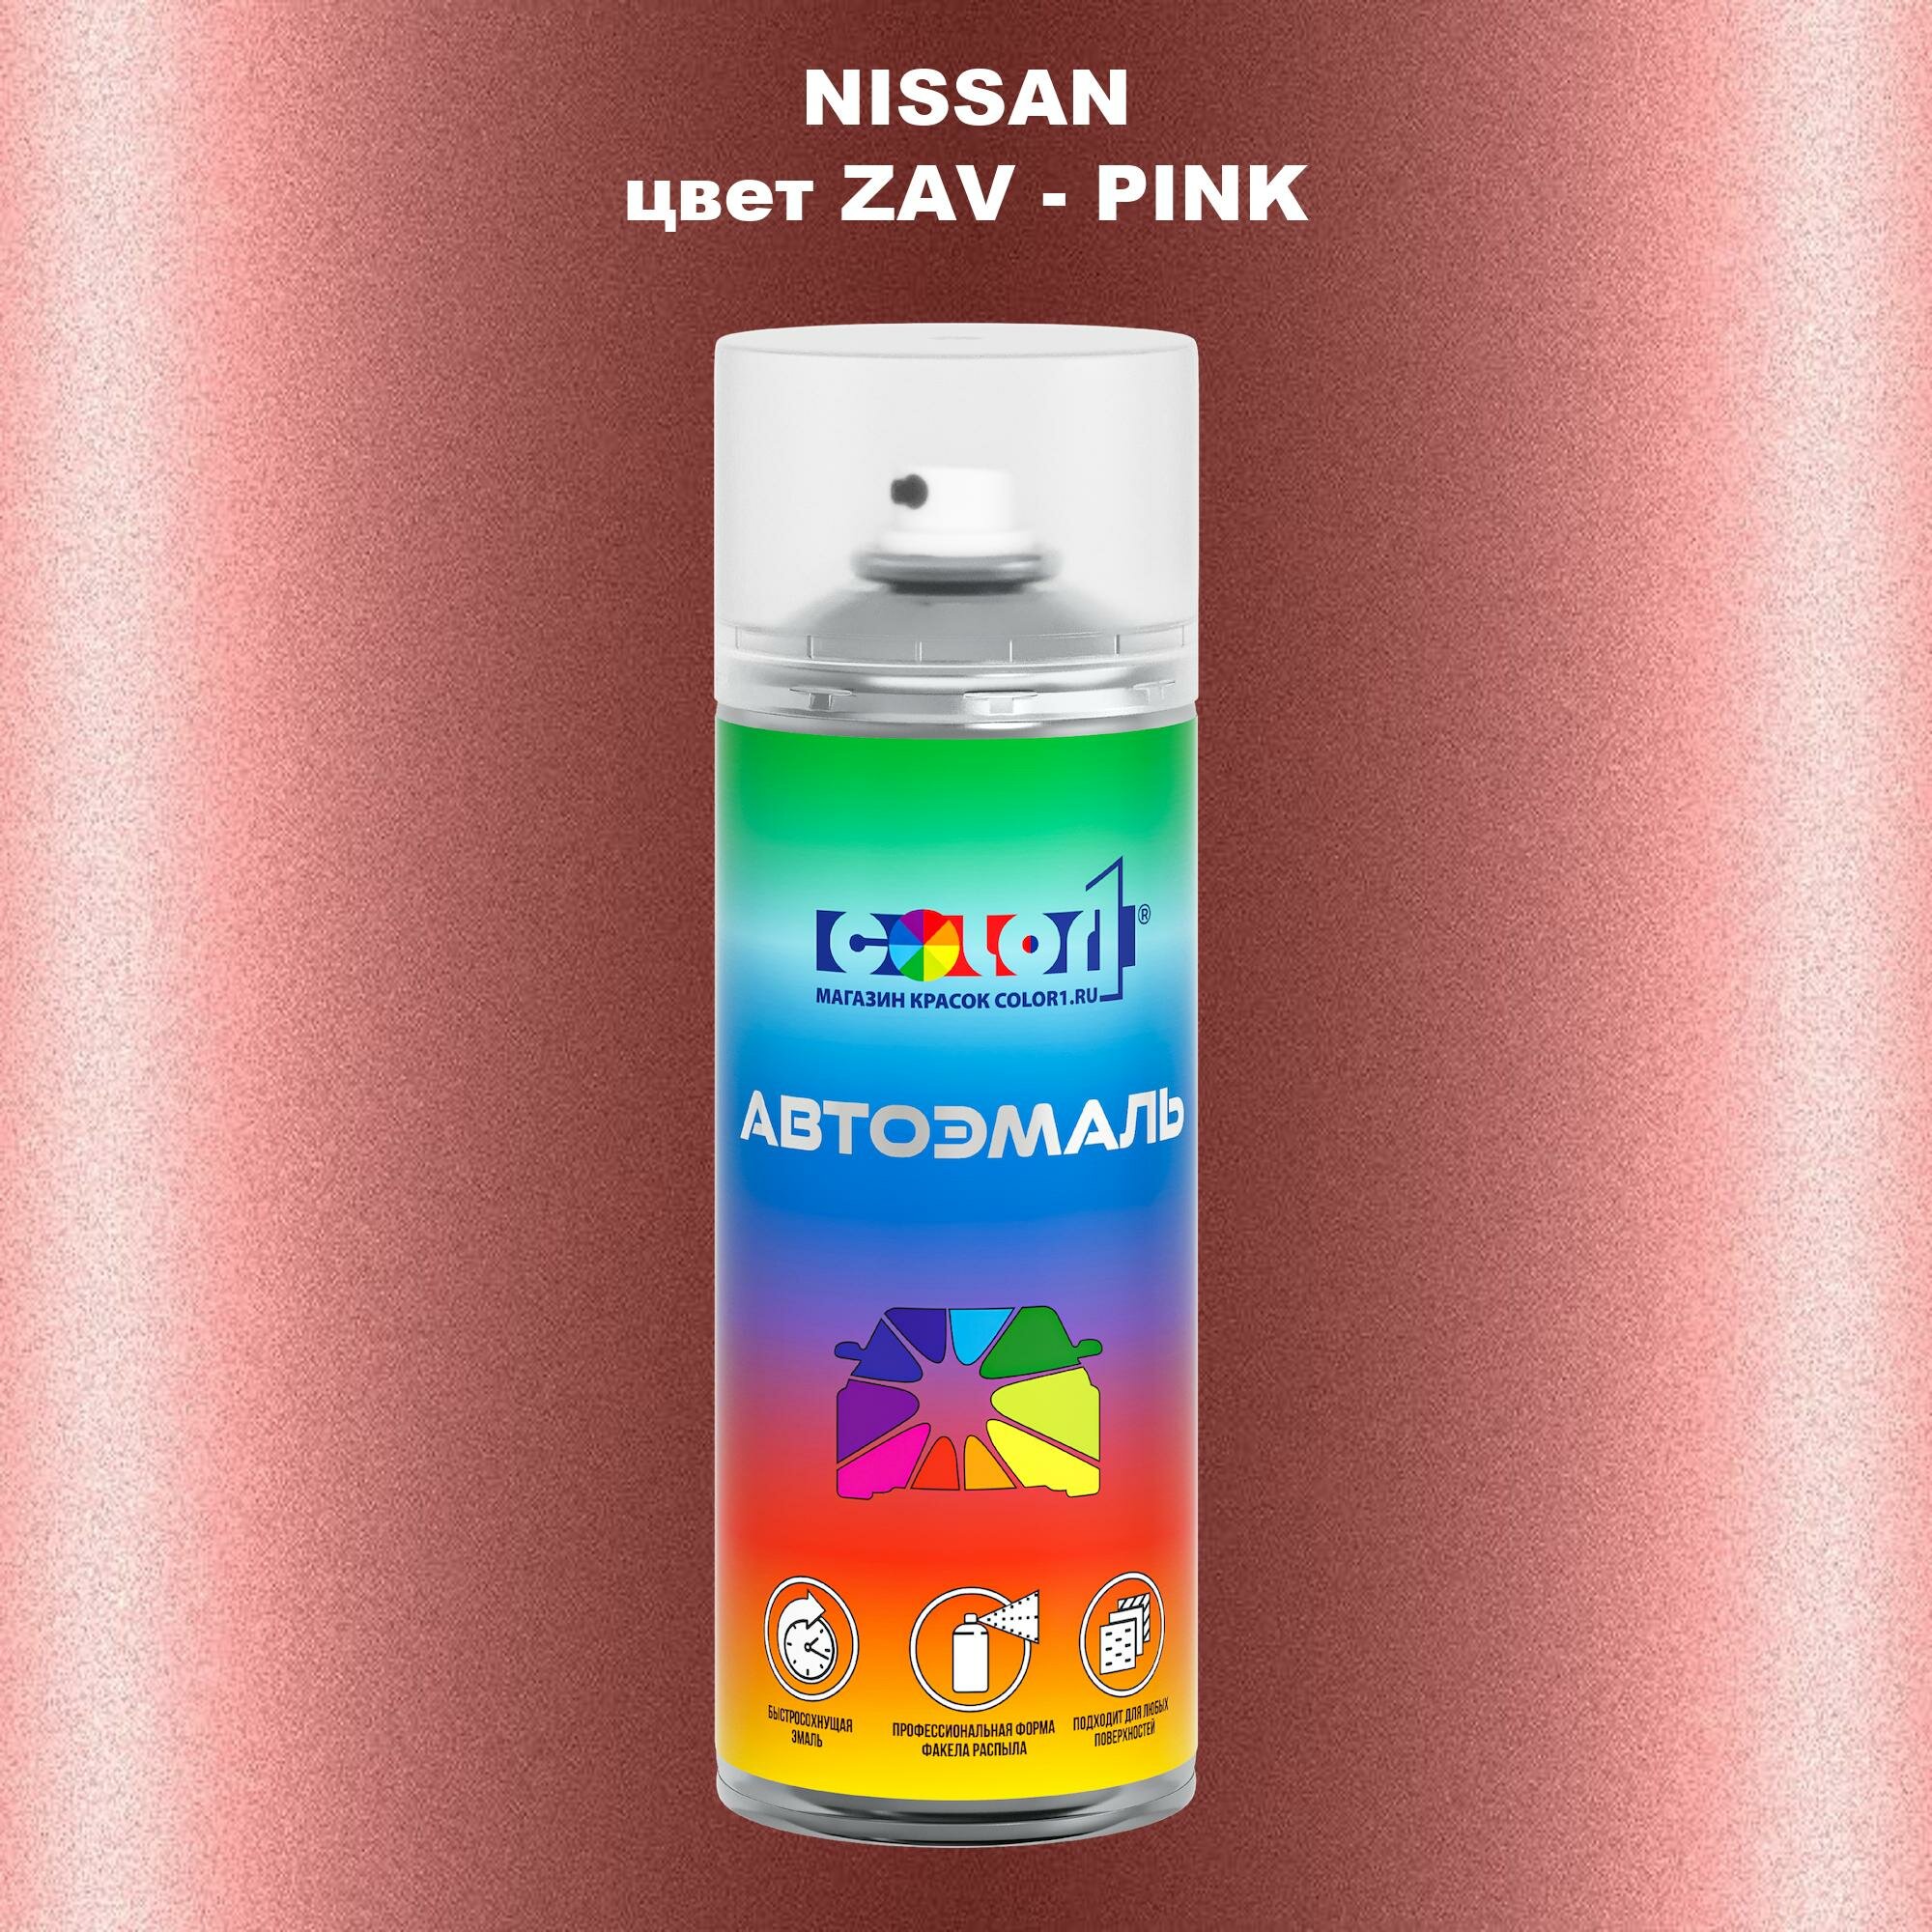 Аэрозольная краска COLOR1 для NISSAN цвет ZAV - PINK